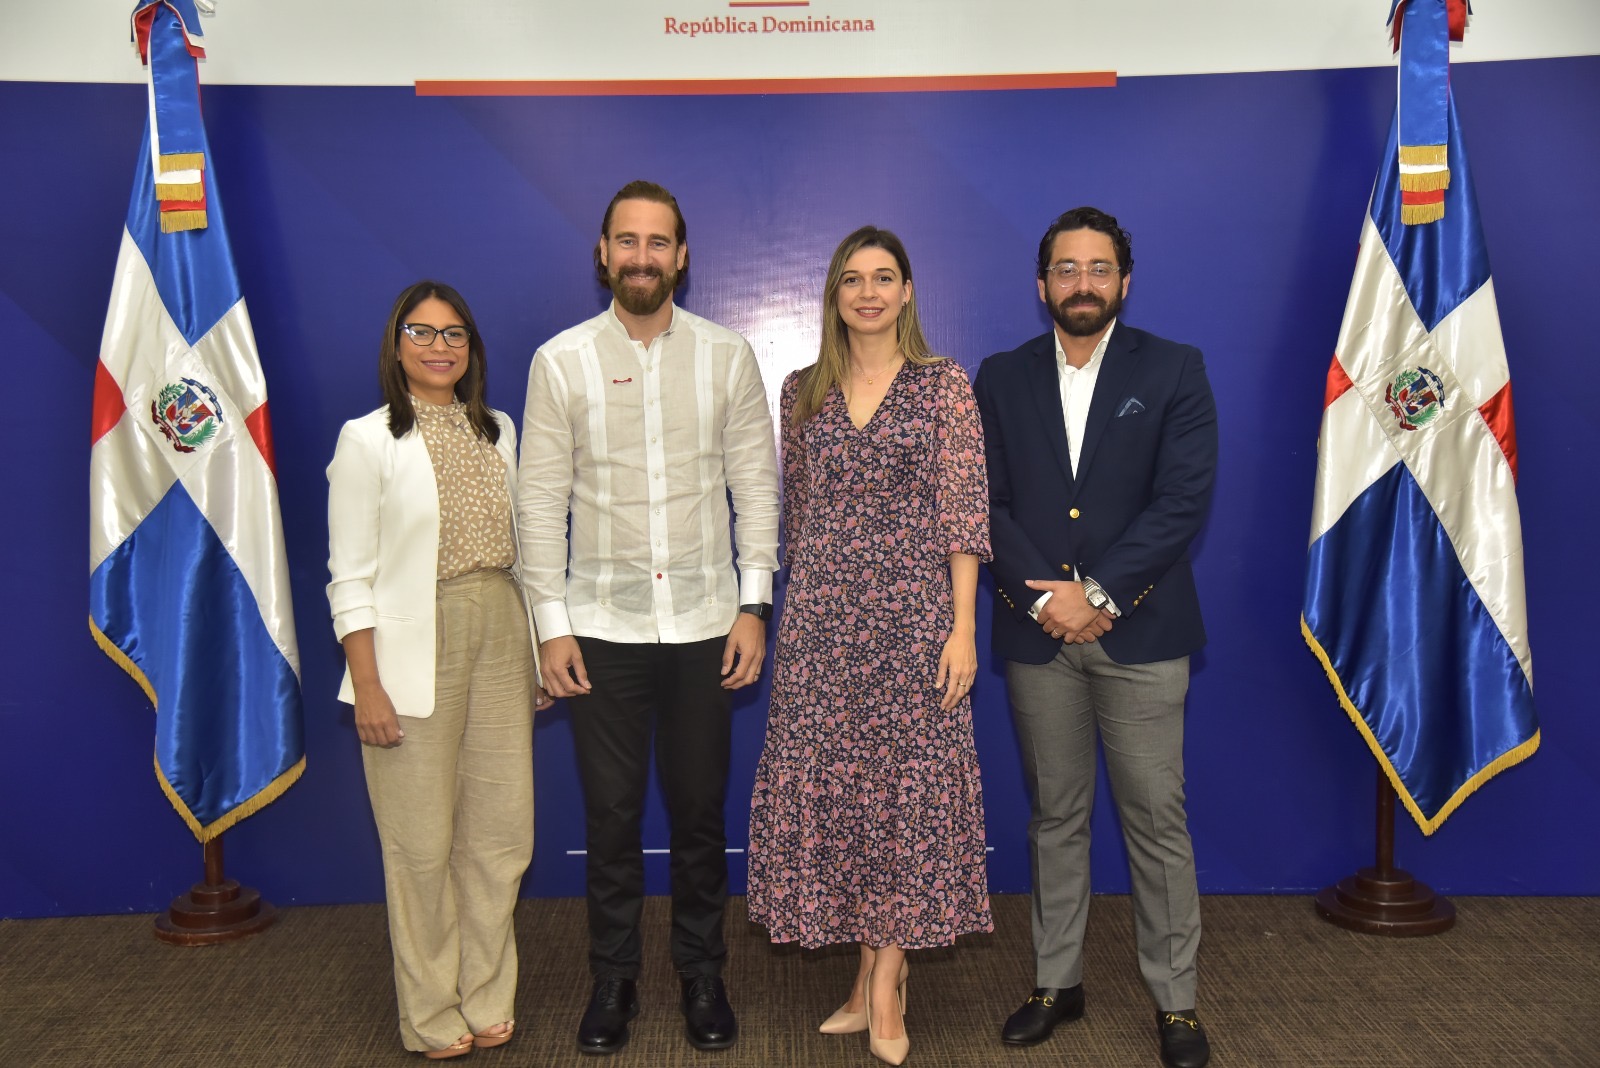 REPÚBLICA DOMINICANA: INDEX, DGCINE y Banco BHD lanzan segunda edición del Concurso de Cortometrajes Huellas de mi Quisqueya